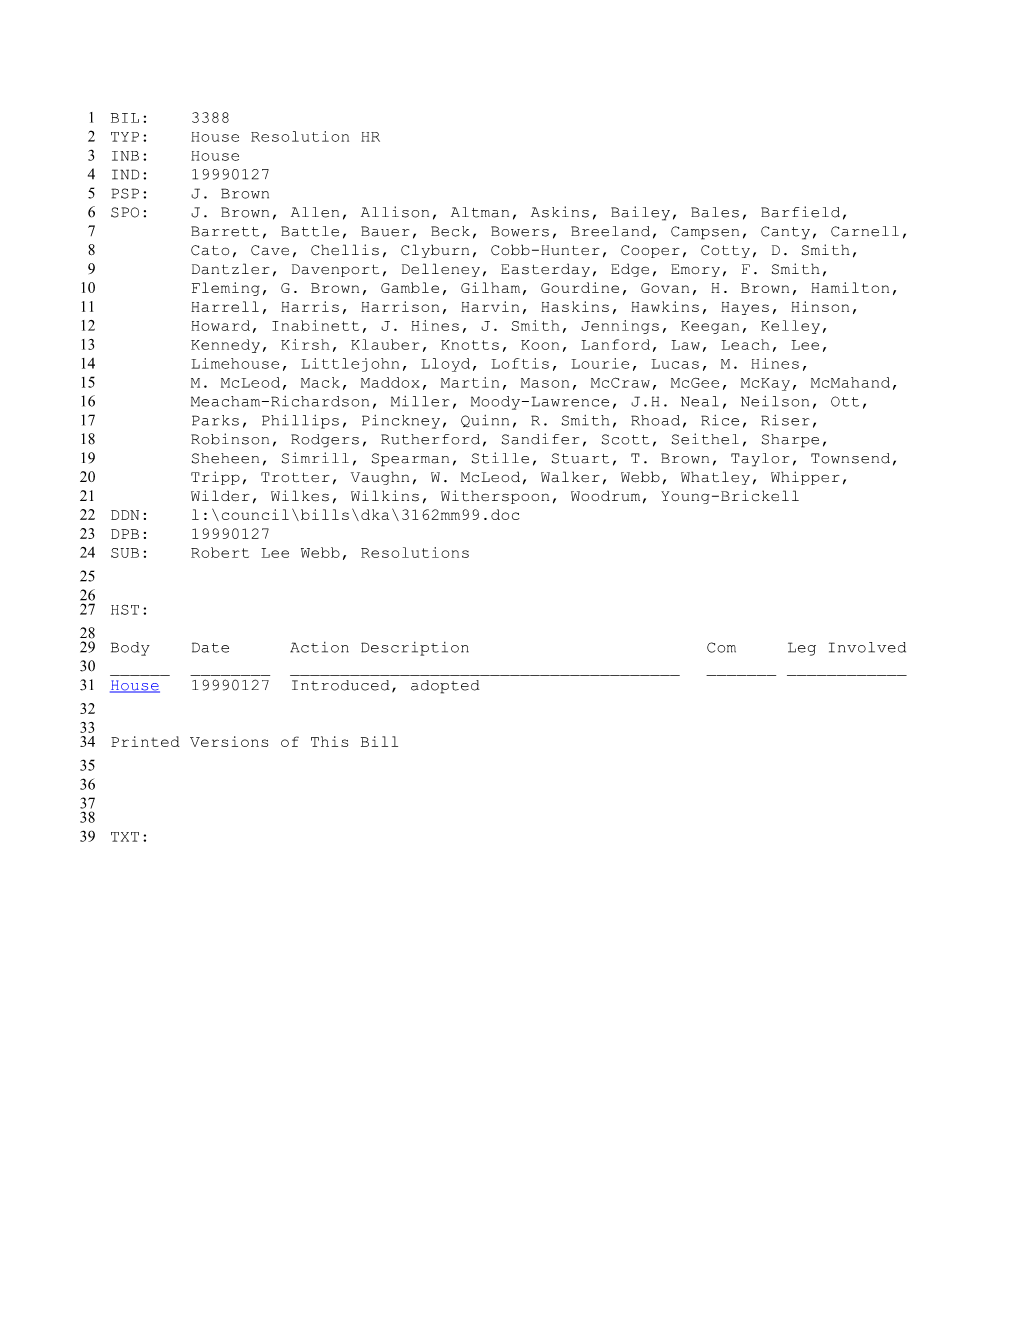 1999-2000 Bill 3388: Robert Lee Webb, Resolutions - South Carolina Legislature Online